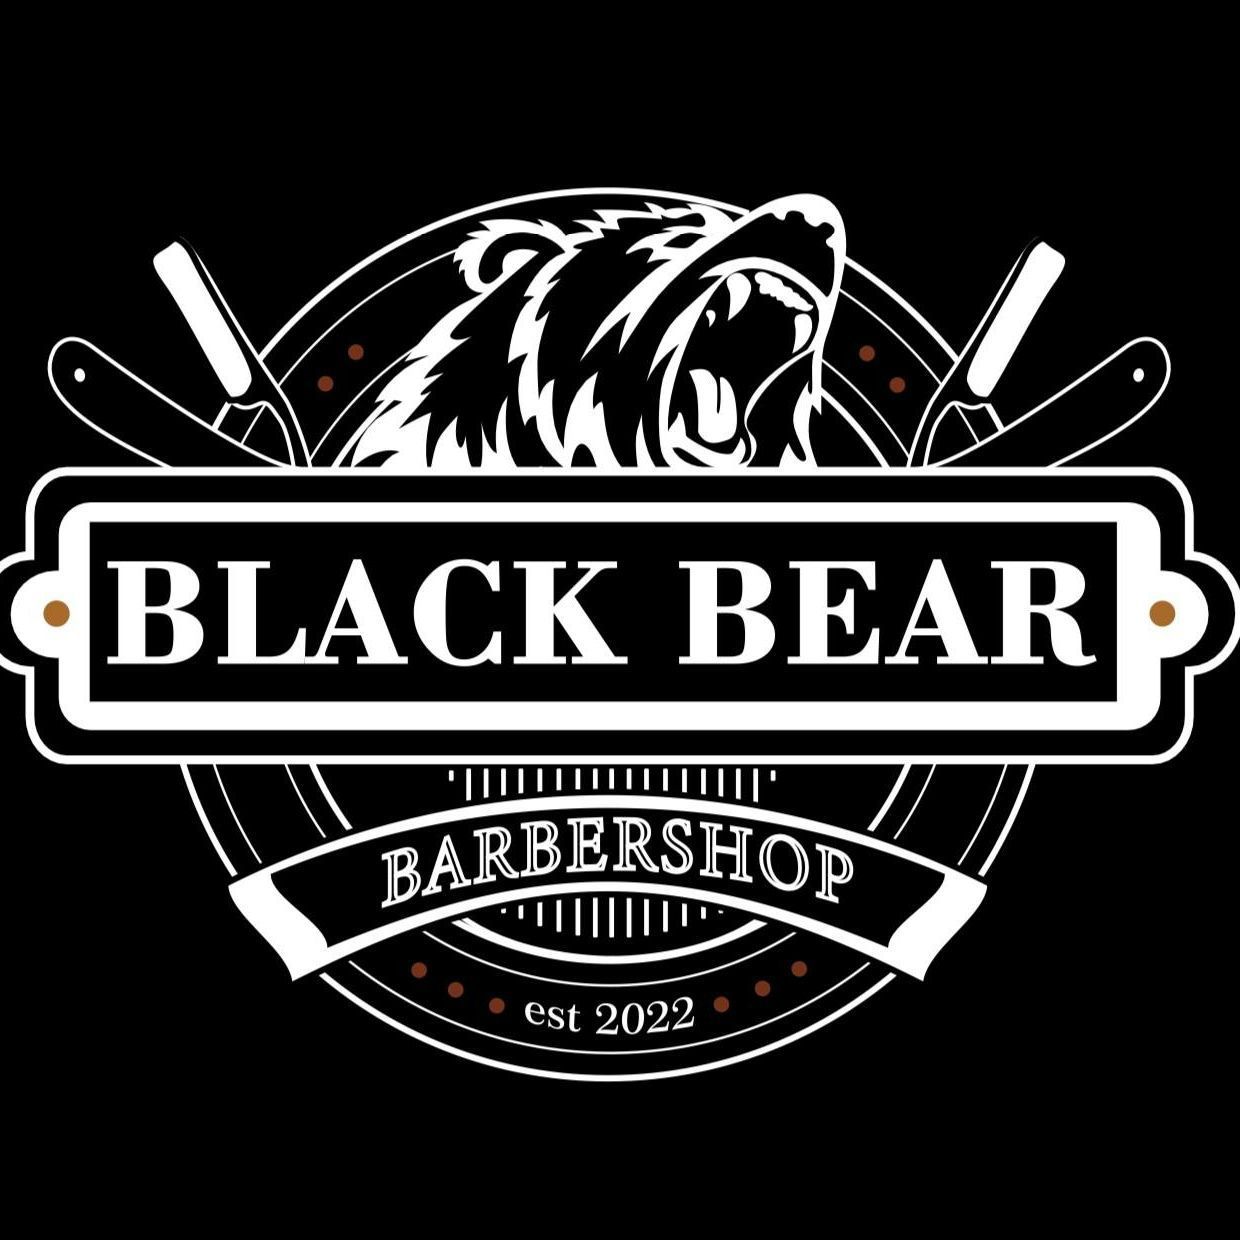 Black Bear Barbershop, Jana Kazimierza 47, U2, 01-267, Warszawa, Wola